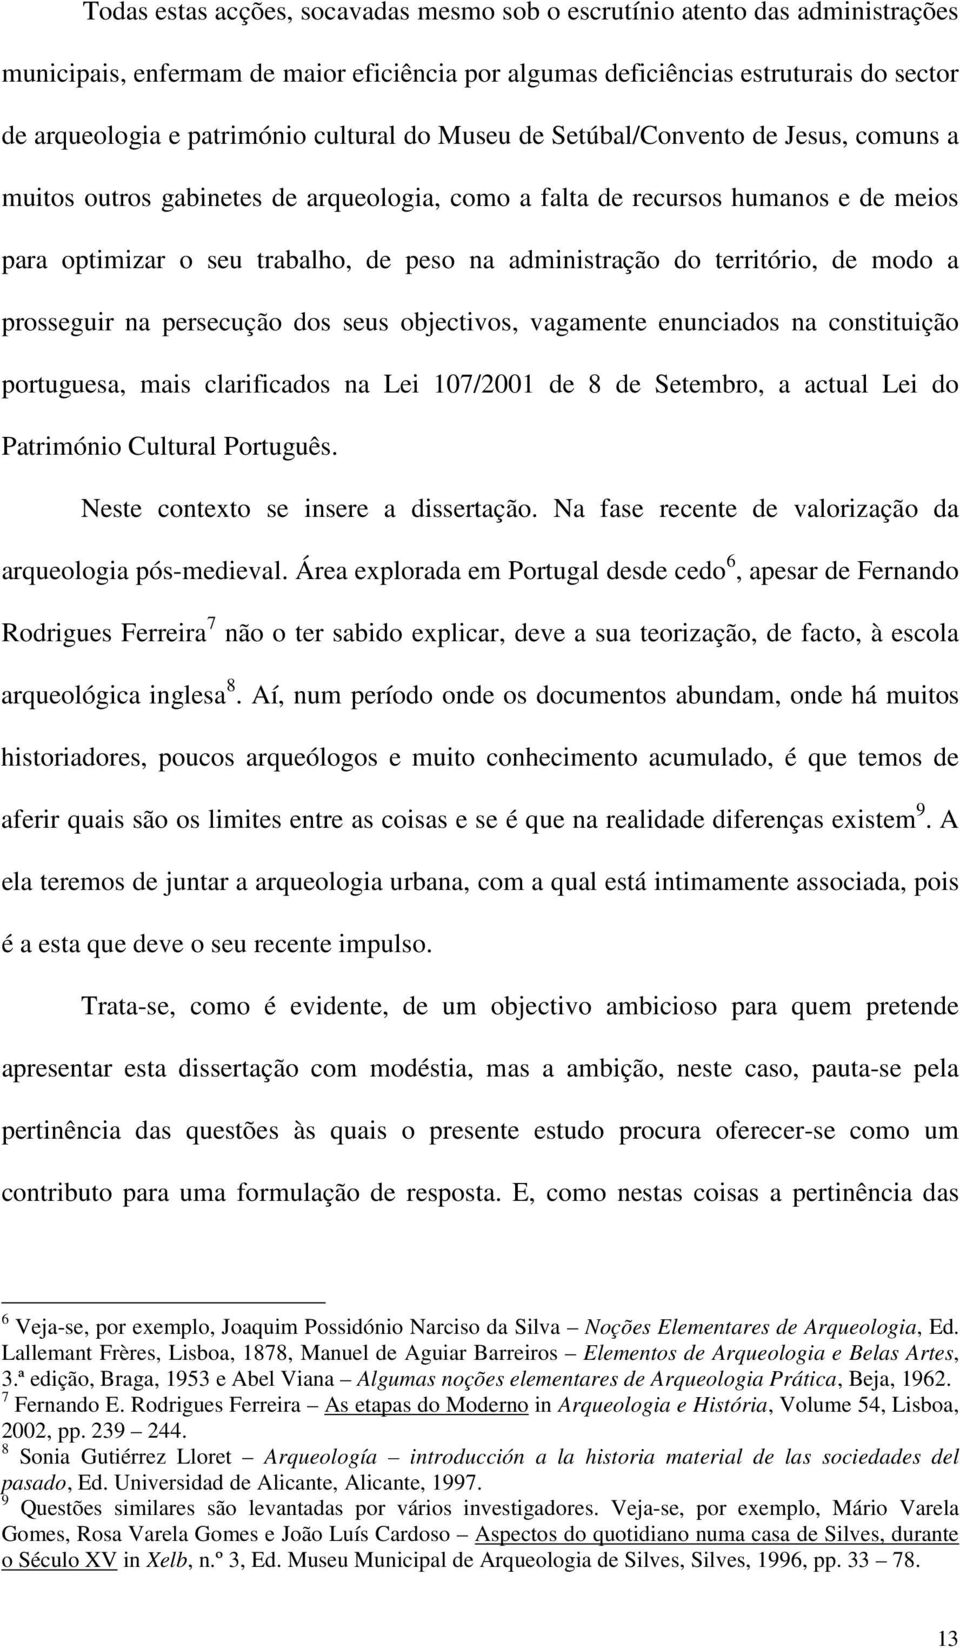 território, de modo a prosseguir na persecução dos seus objectivos, vagamente enunciados na constituição portuguesa, mais clarificados na Lei 107/2001 de 8 de Setembro, a actual Lei do Património